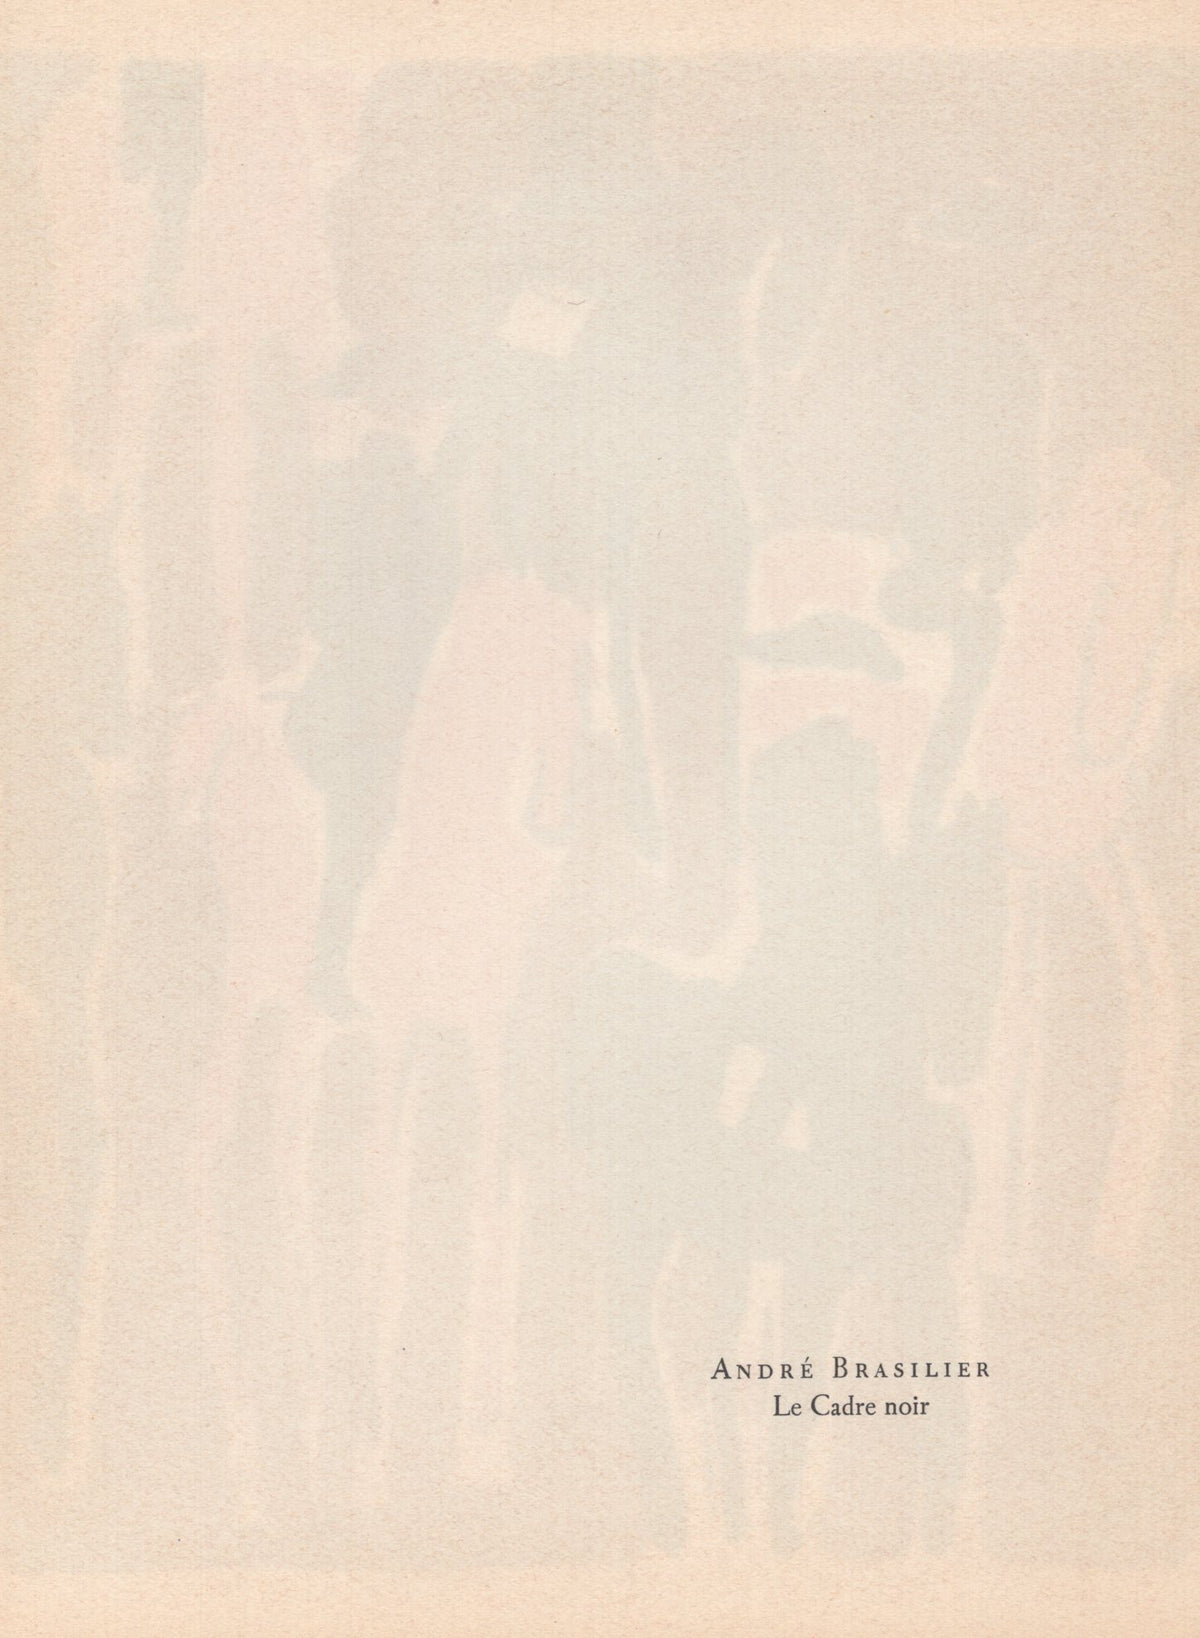 Andre Brasilier - &quot;Le Cadre noir&quot; - Mourlot Press 1964 Lithograph - 7.5 x 10&quot;